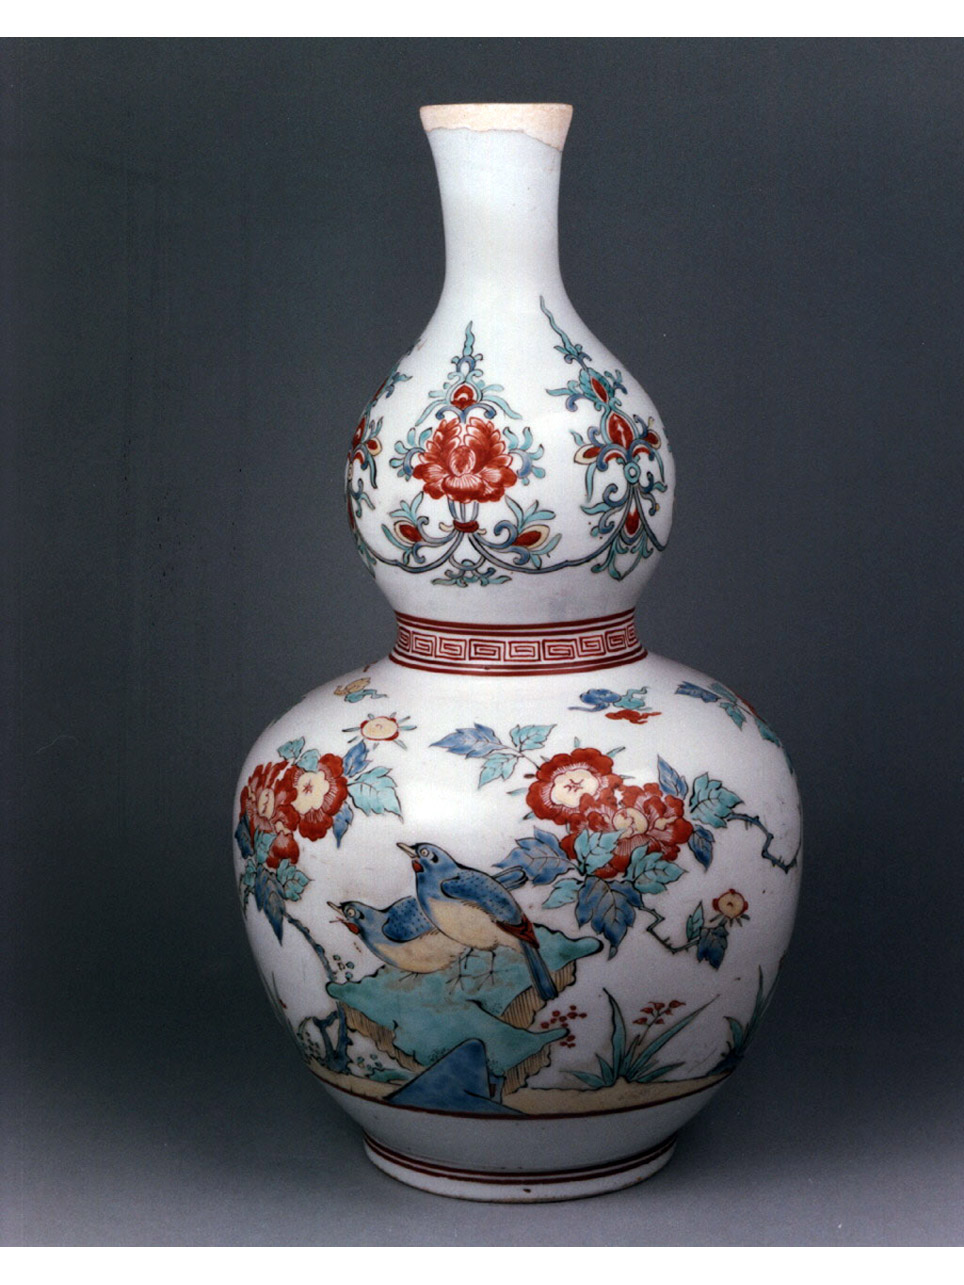 motivi decorativi vegetali e animali (bottiglia) - manifattura giapponese (sec. XVII)